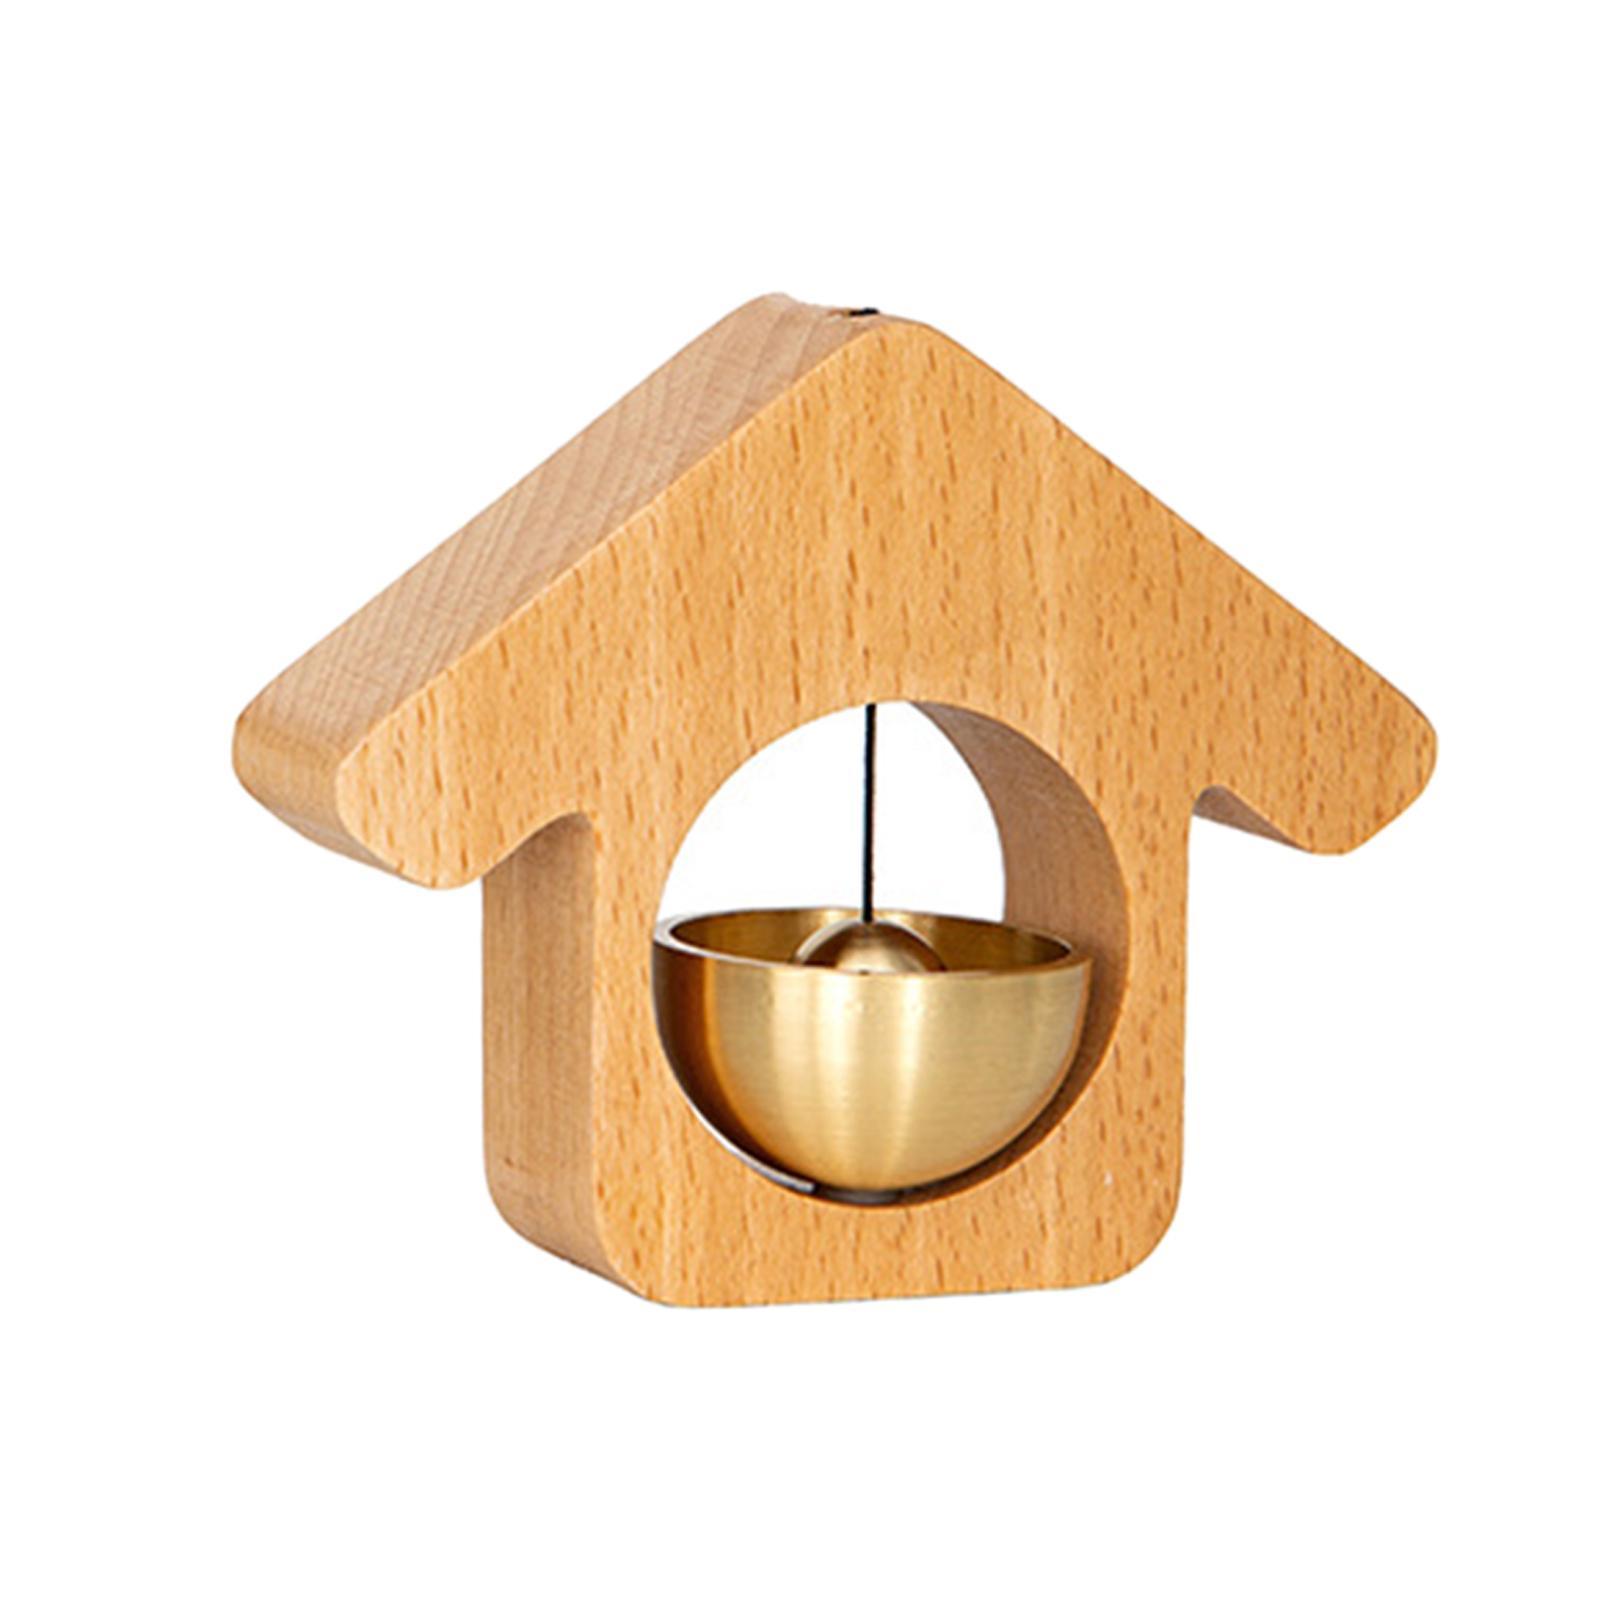 Wood Shopkeepers Bell Gate Bell Chime for Fridge Barn Door